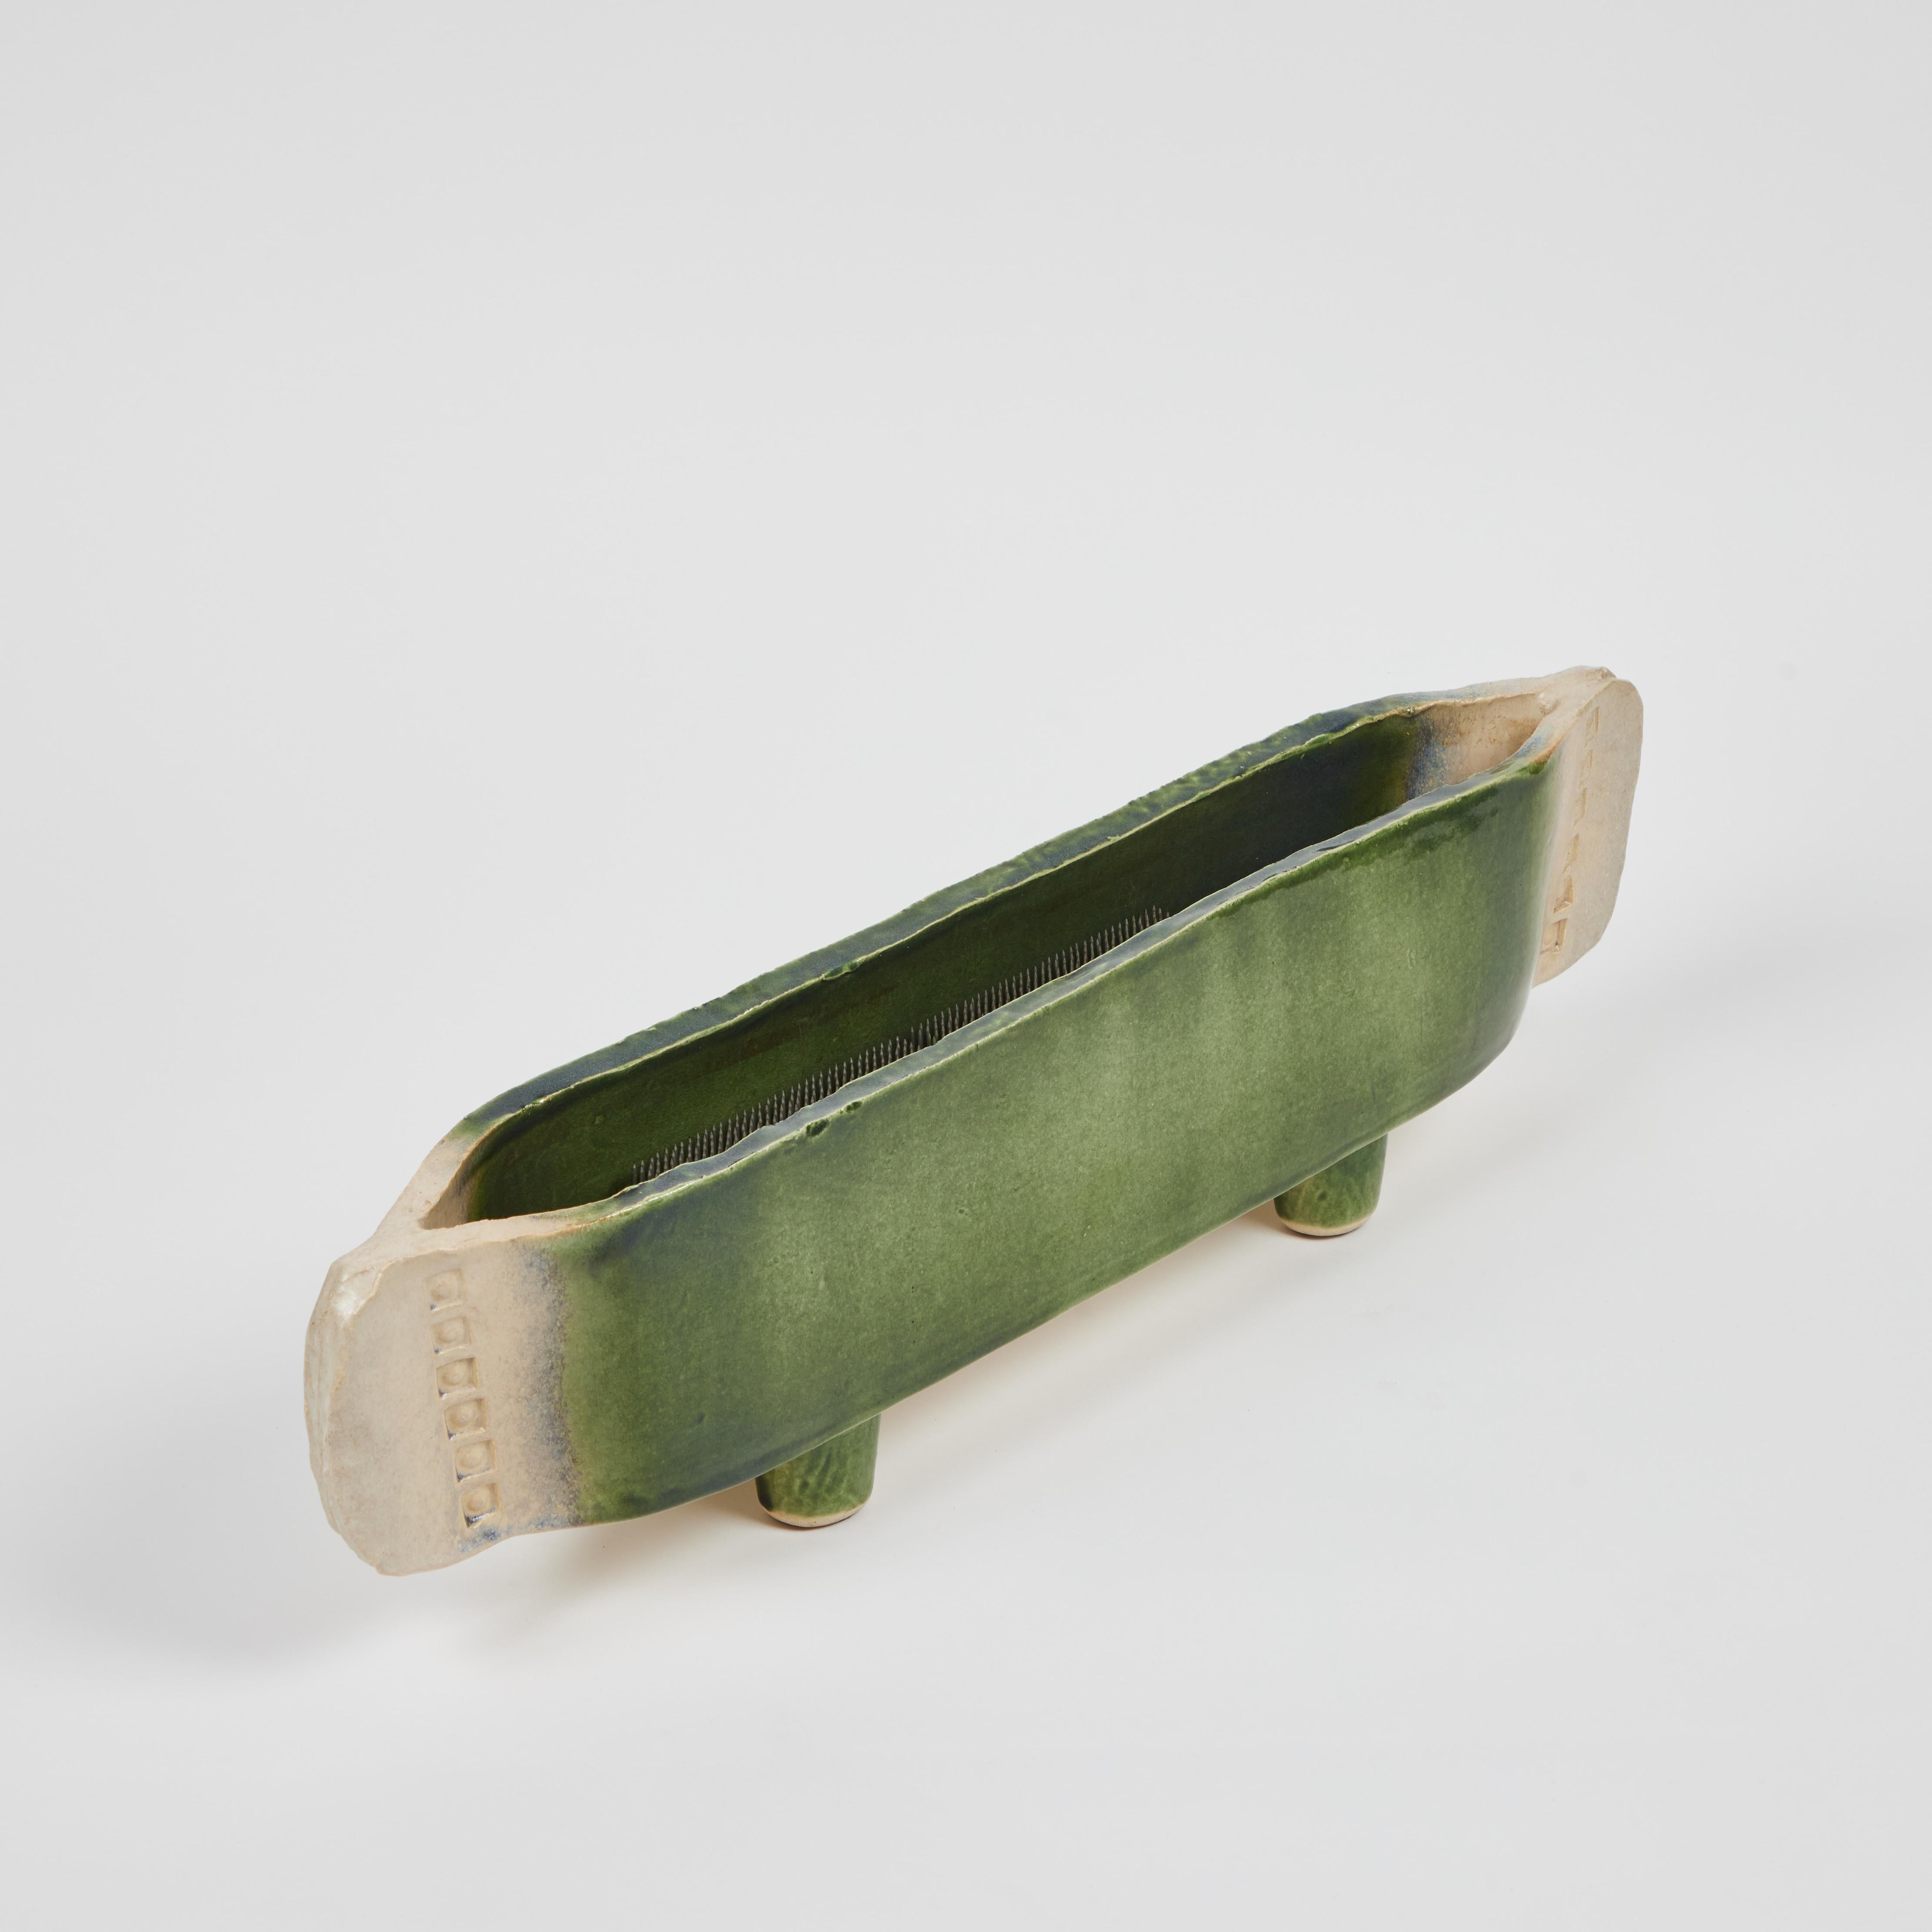 Nous pensons que ce vase ancien en poterie Ikebana, (c.C 1920) est exceptionnel ! Il est fabriqué à la main à partir de plaques d'argile roulées et façonné en un fantastique long et joli récipient à pied avec des accents de timbre sur les